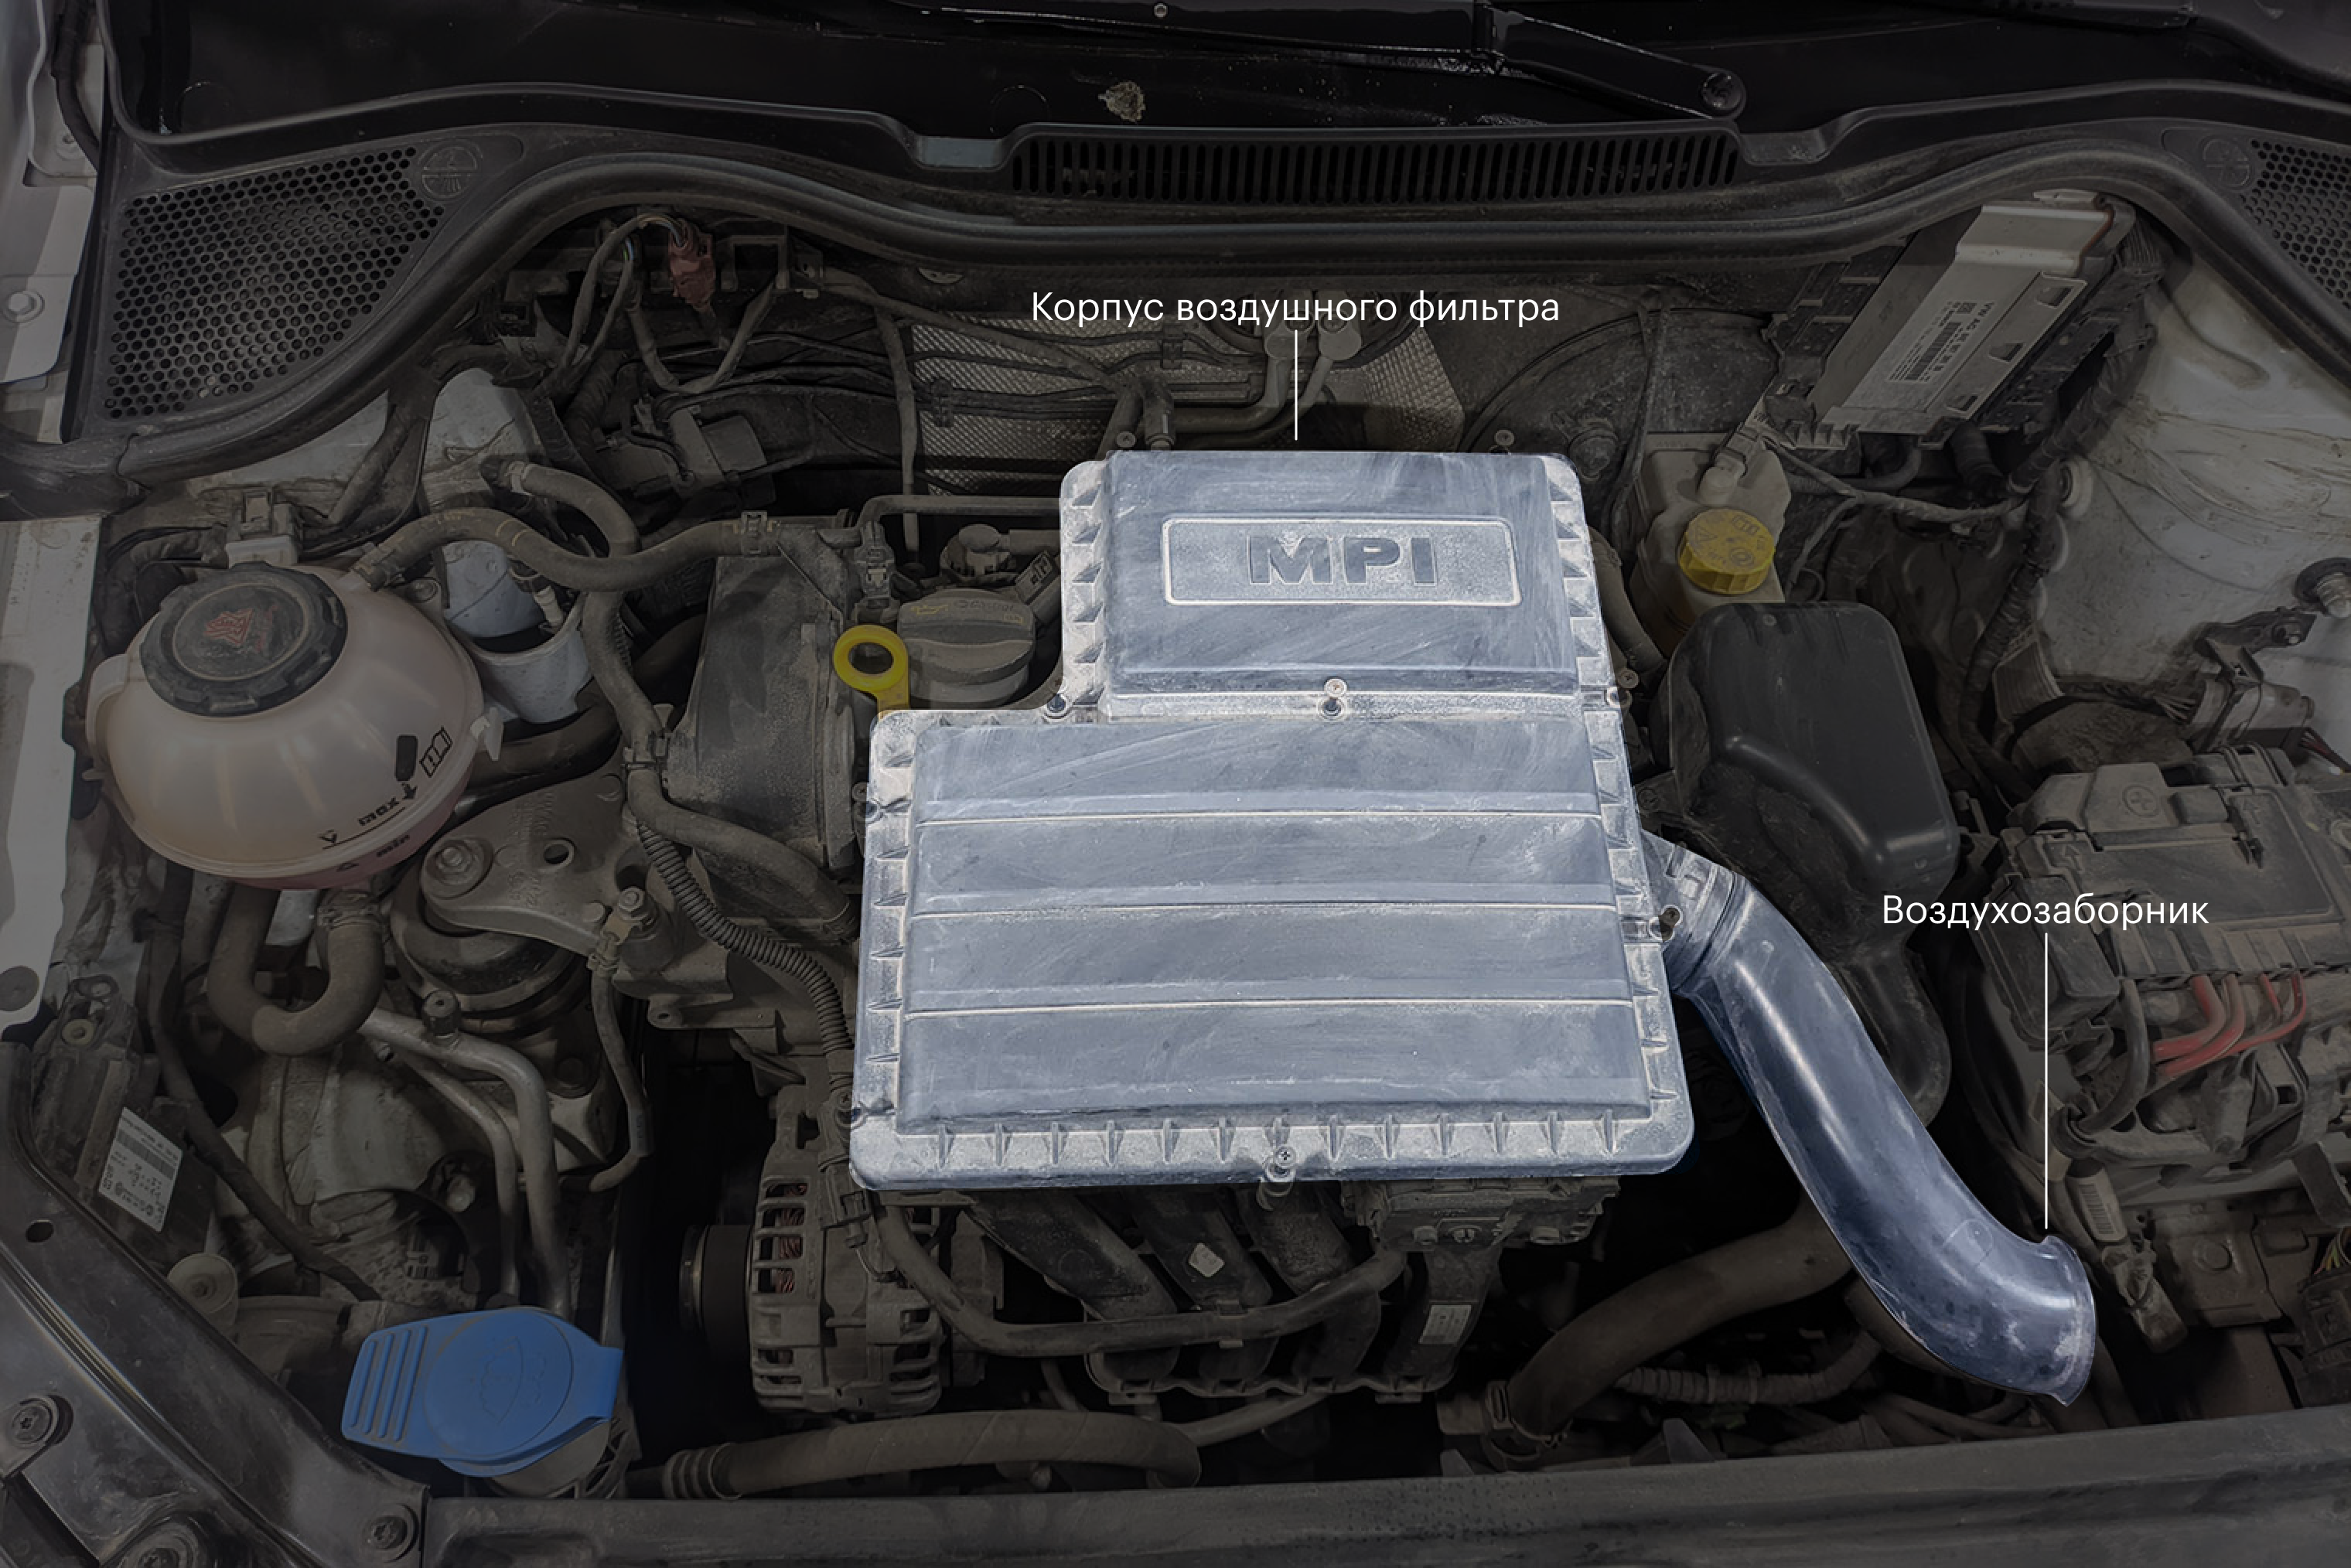 Volkswagen Polo 2021 года, 1.6 MPI. Корпус фильтра — на двигателе, воздухозаборник — рядом, в подкапотном пространстве, возле аккумулятора, хоть и ориентирован ближе к решетке радиатора